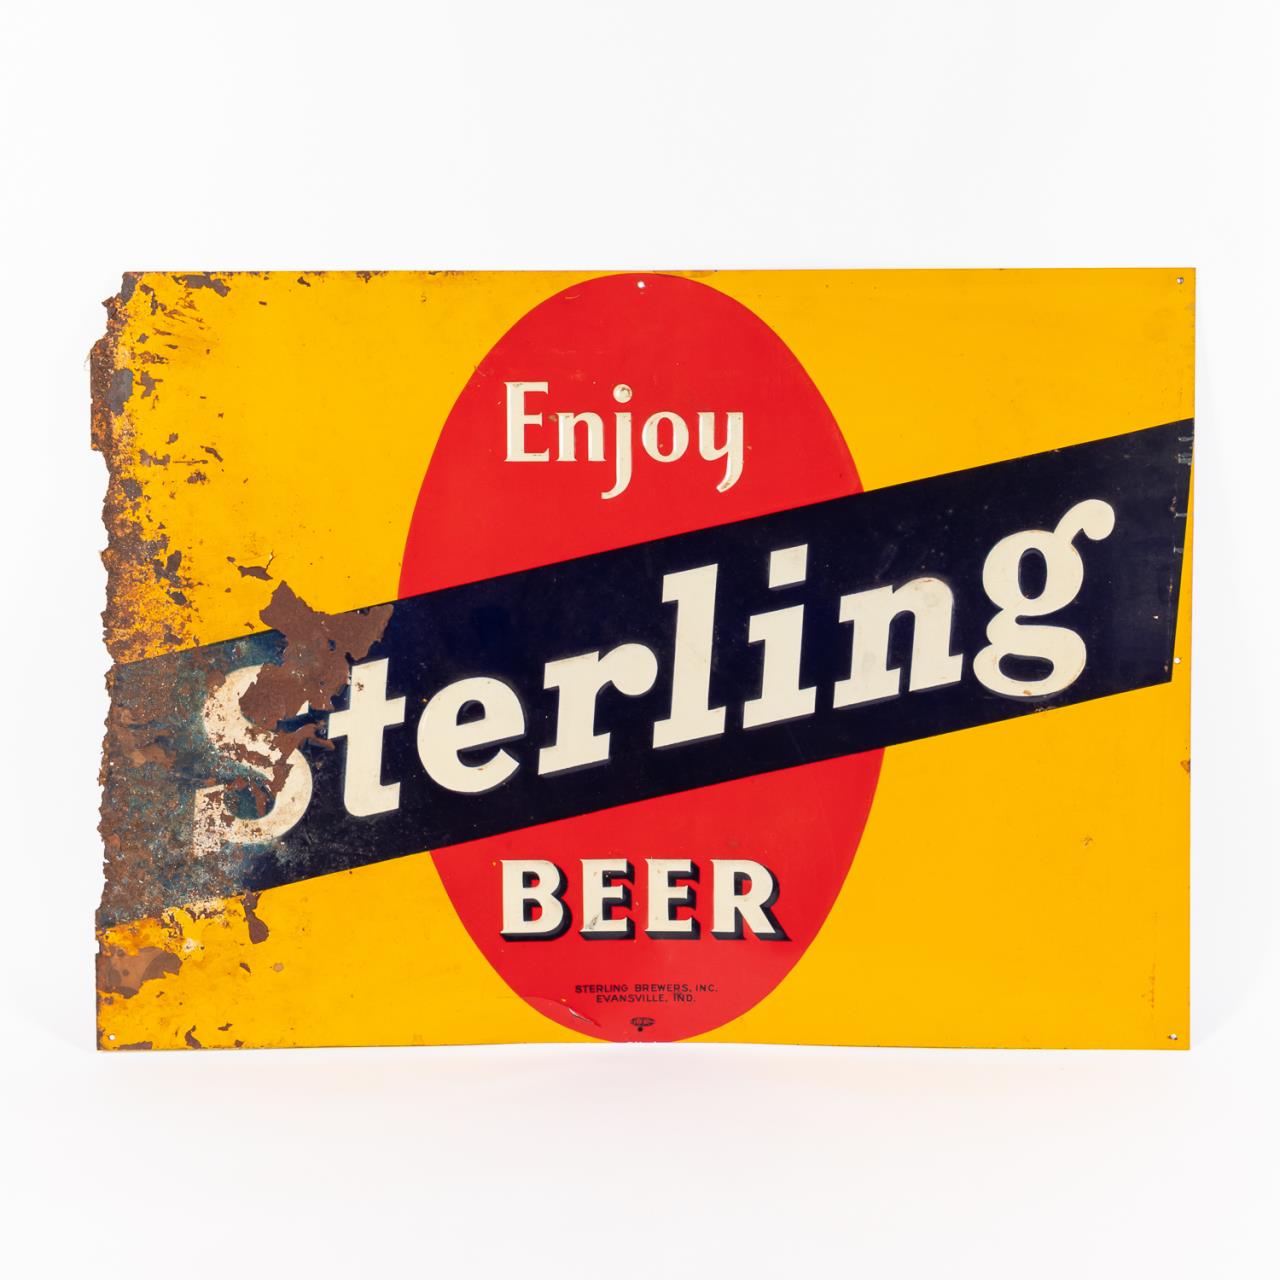 VINTAGE ENJOY STERLING BEER ADVERTISING 35b32f